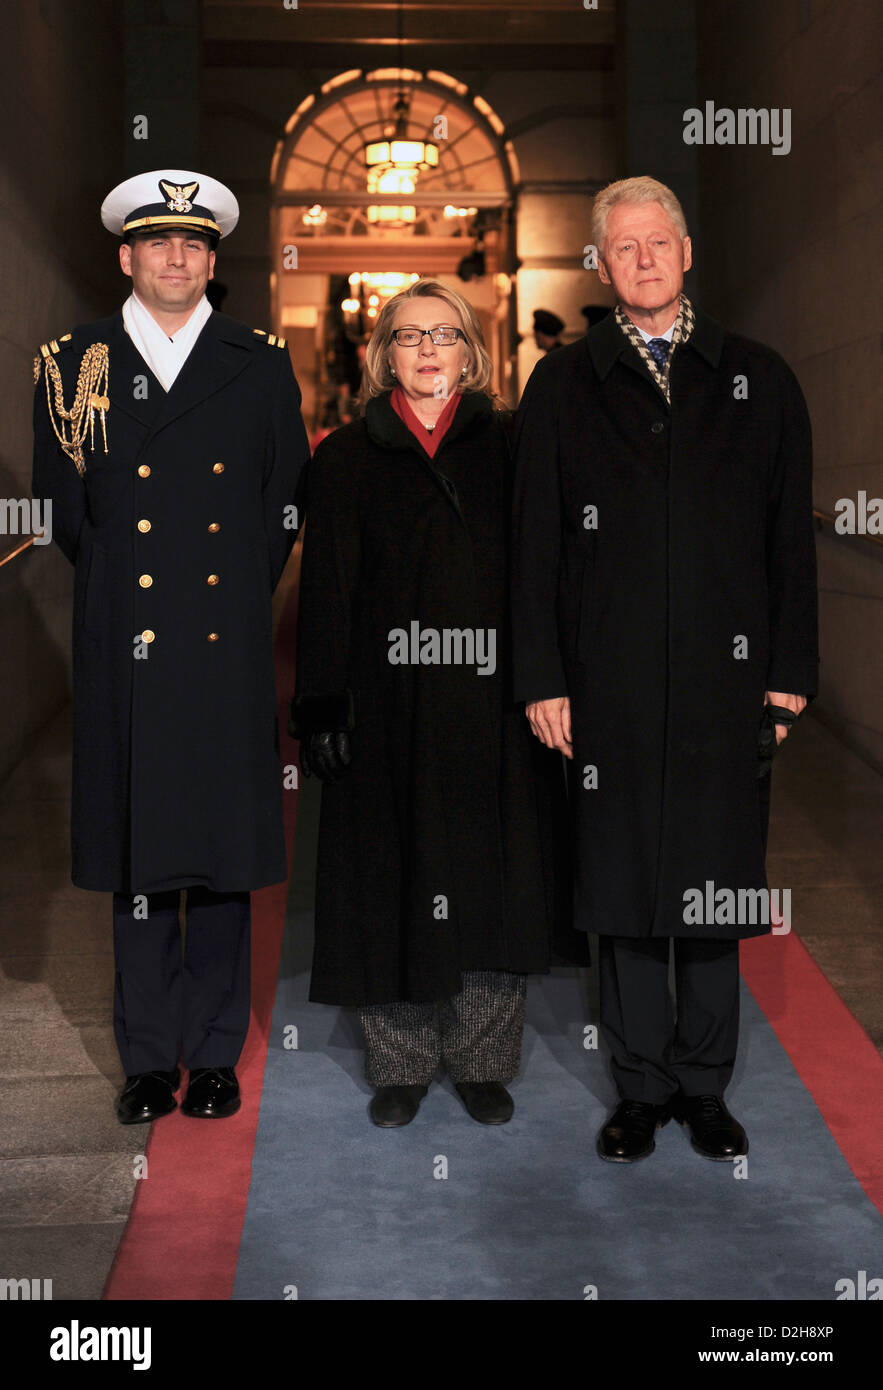 L'ancien Président américain William Clinton et le secrétaire d'État américaine Hillary Rodham Clinton sont accompagnés jusqu'à la plate-forme pour la cérémonie d'assermentation à la 57e Cérémonie d'investiture sur le capitole le 21 janvier 2013 à Washington, DC. Banque D'Images